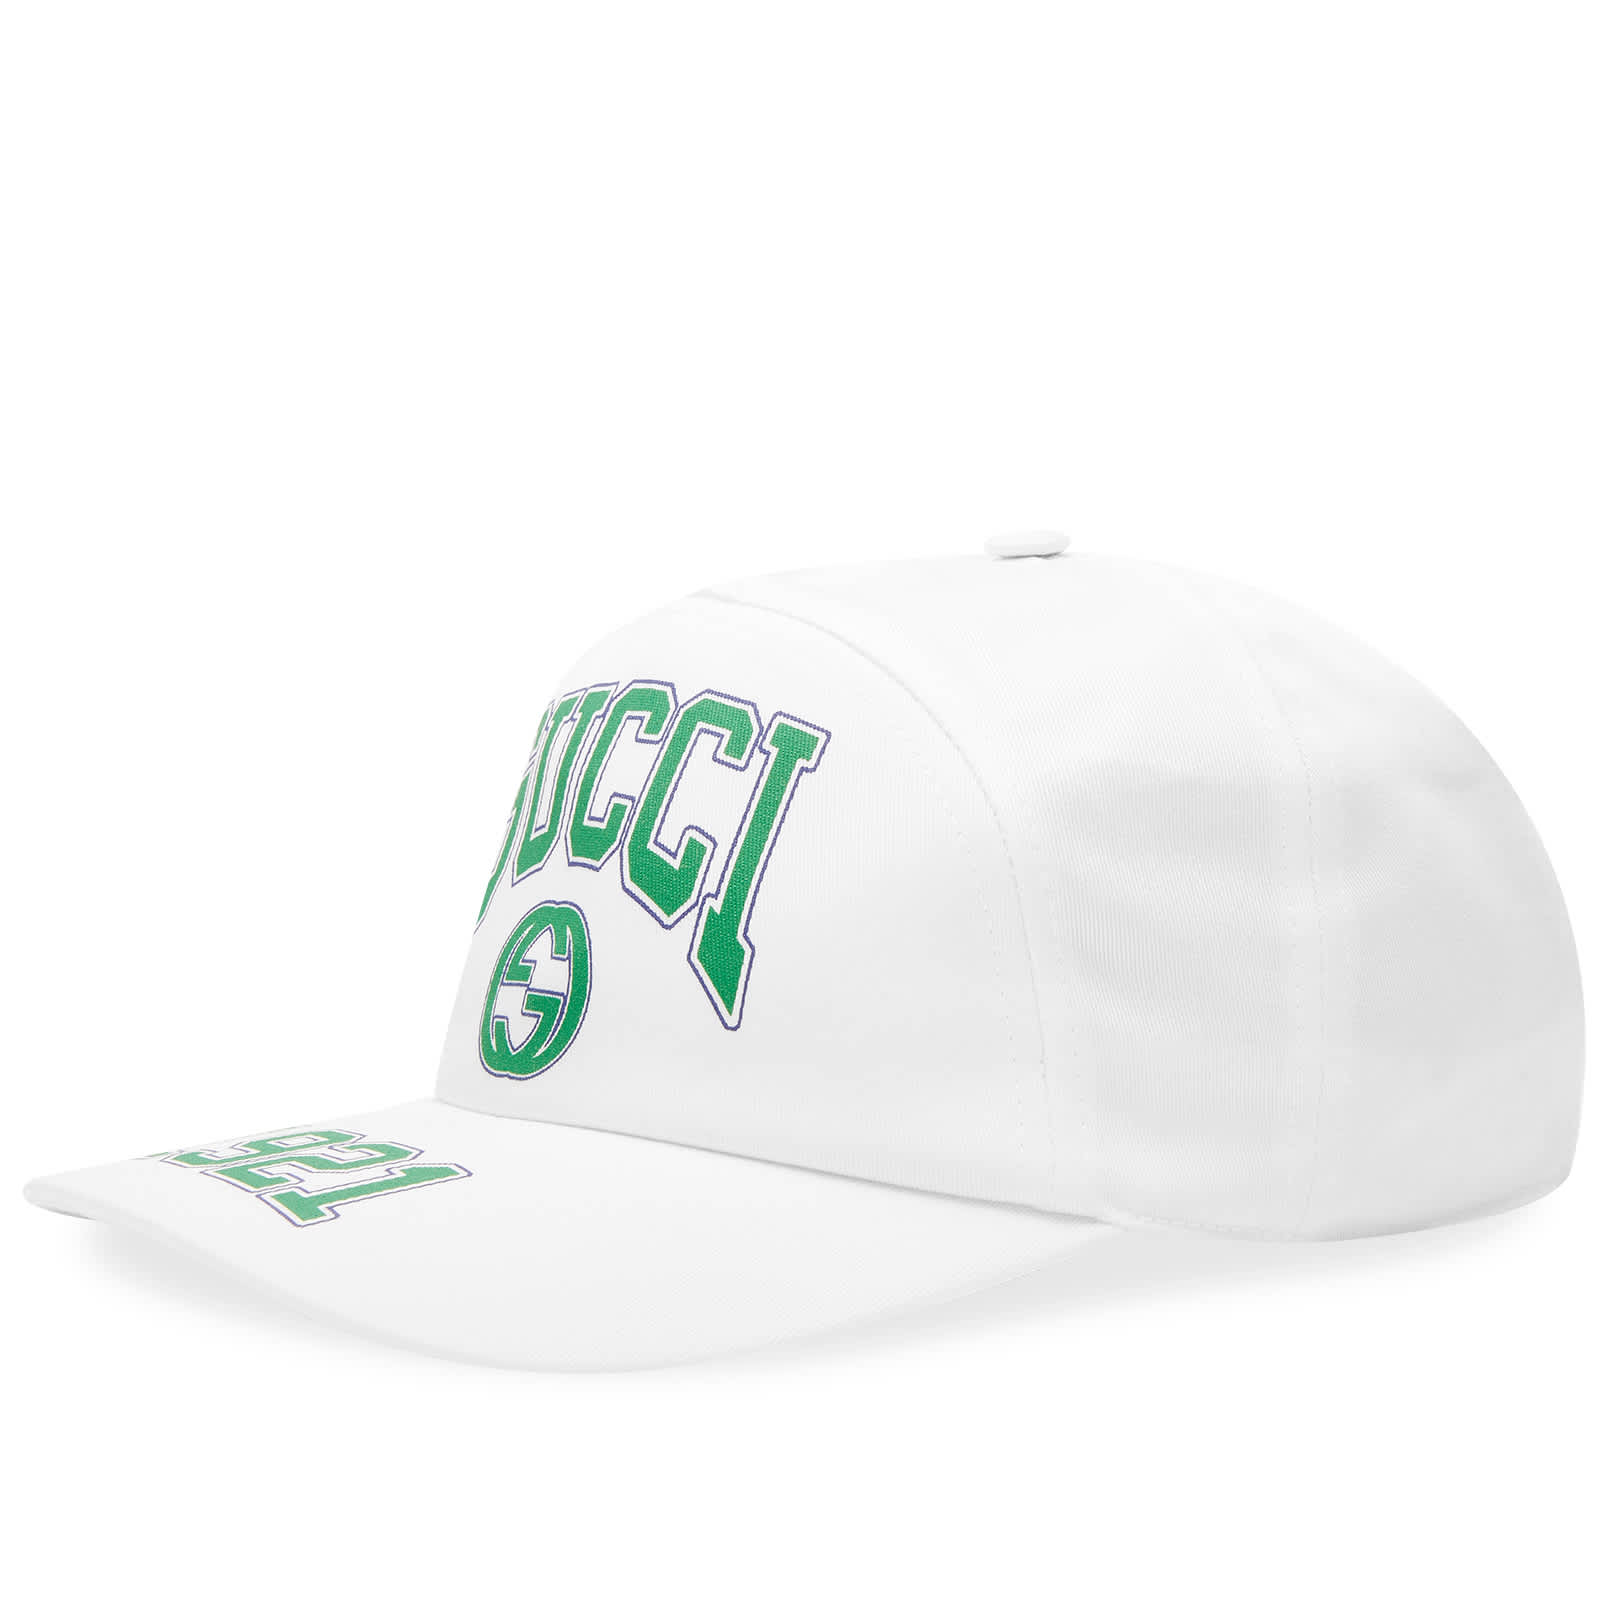 Бейсболка Gucci College Baseball, цвет Ivory & Green бейсбольная кепка от фирмы аранрэп bzrp кепка для гольфа мужская кепка с лошадью мужская бейсбольная женская кепка